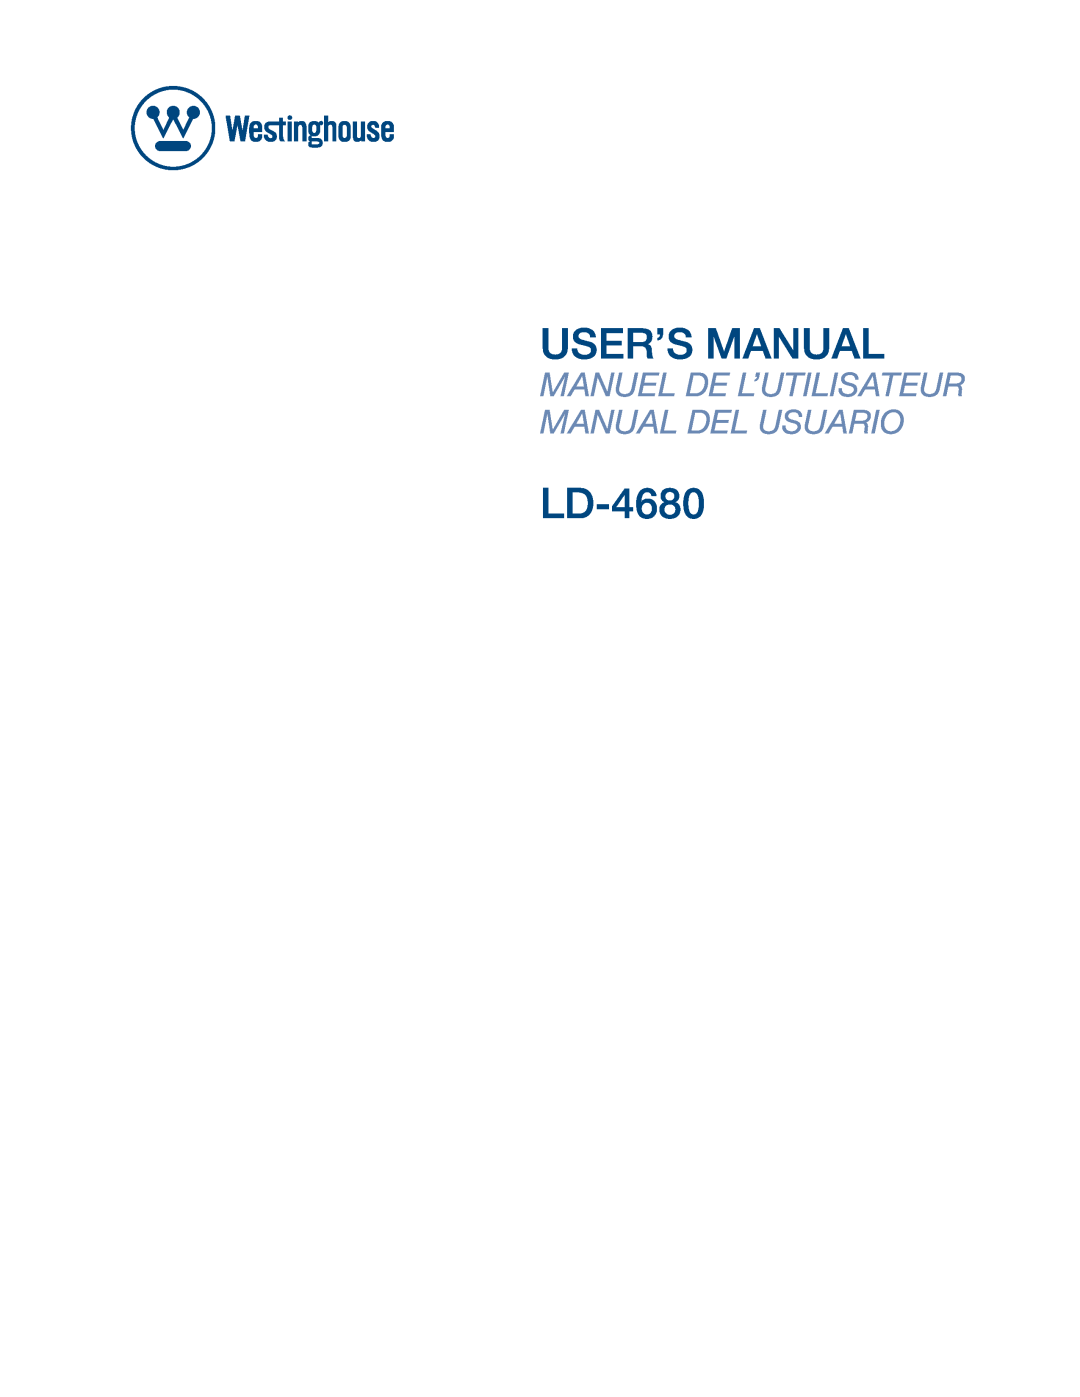 Westinghouse LD-4680 user manual User’S Manual, Manuel De L’Utilisateur Manual Del Usuario 